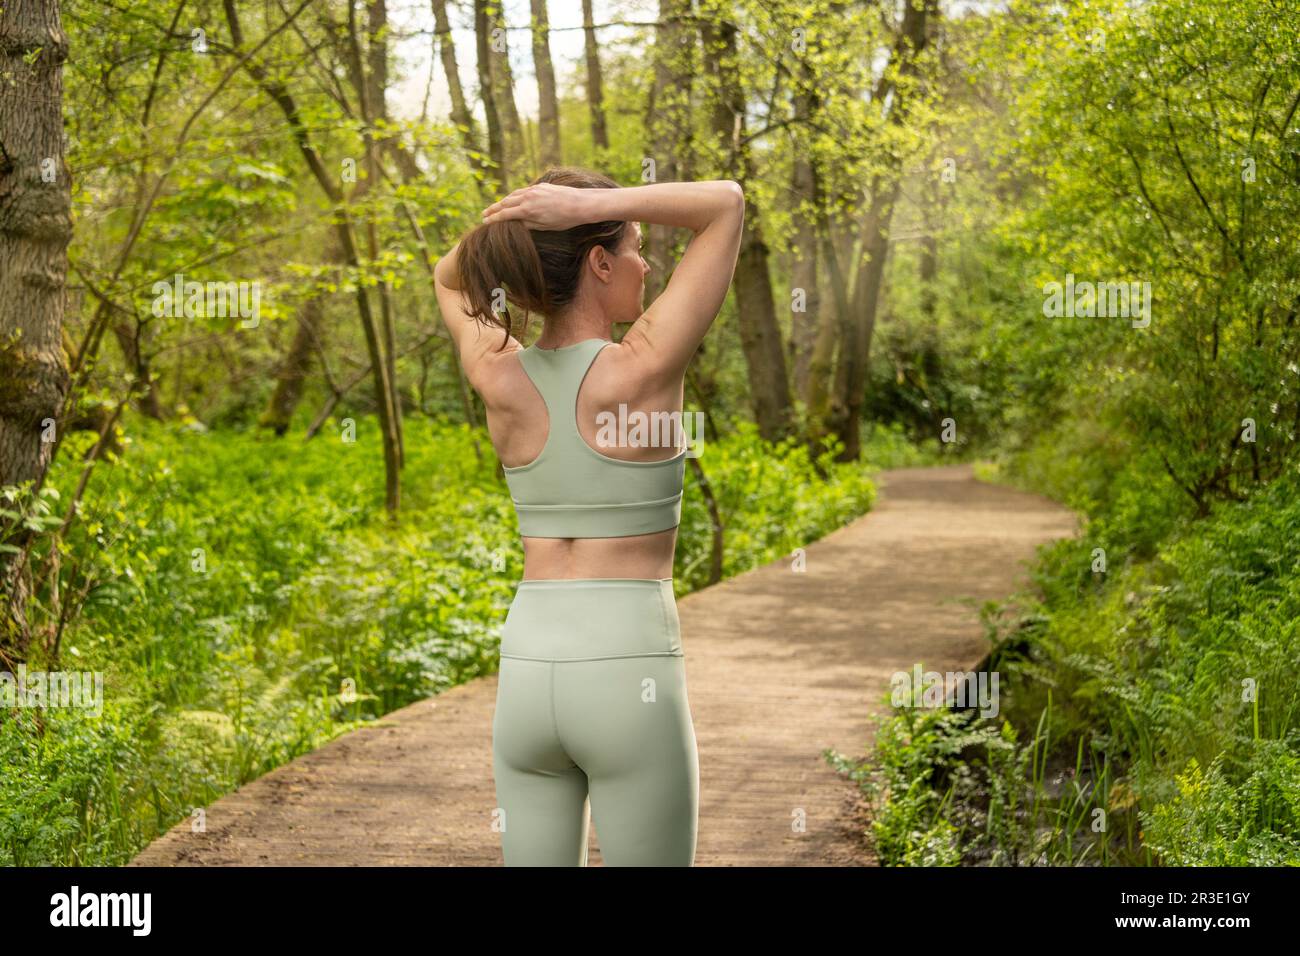 mujer deportiva atando su cabello antes de correr en el parque Foto de stock